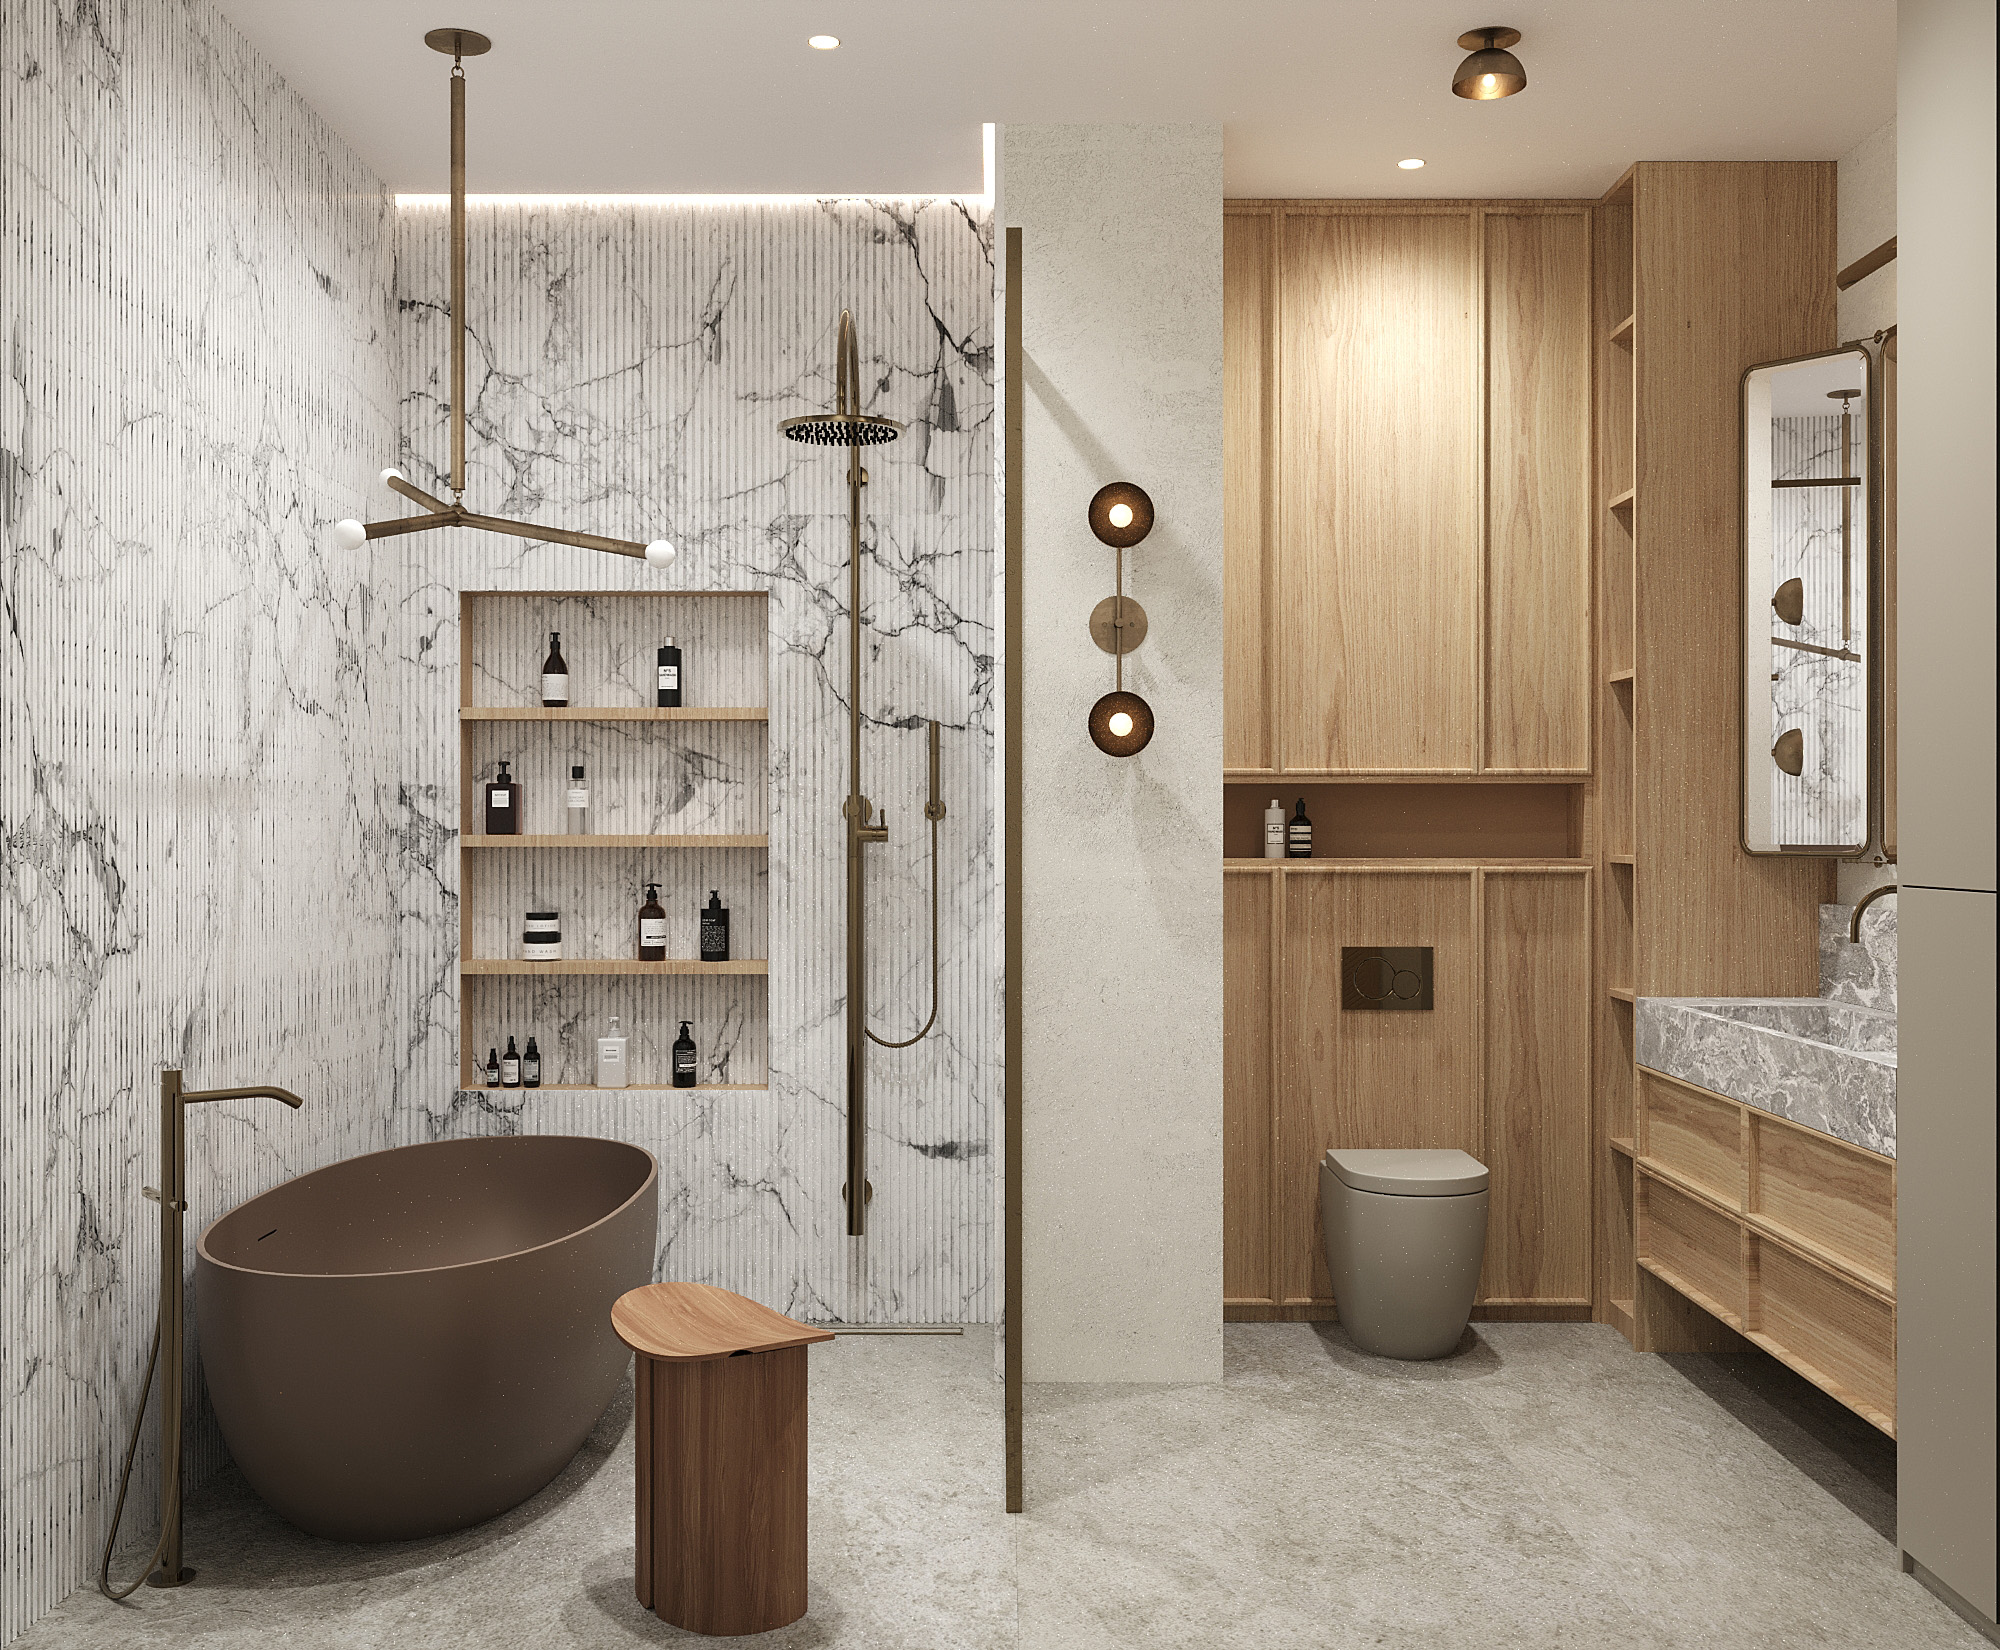 Дизайн-проект интерьера ванной комнаты в ЖК Настоящее, концепция, визуализации